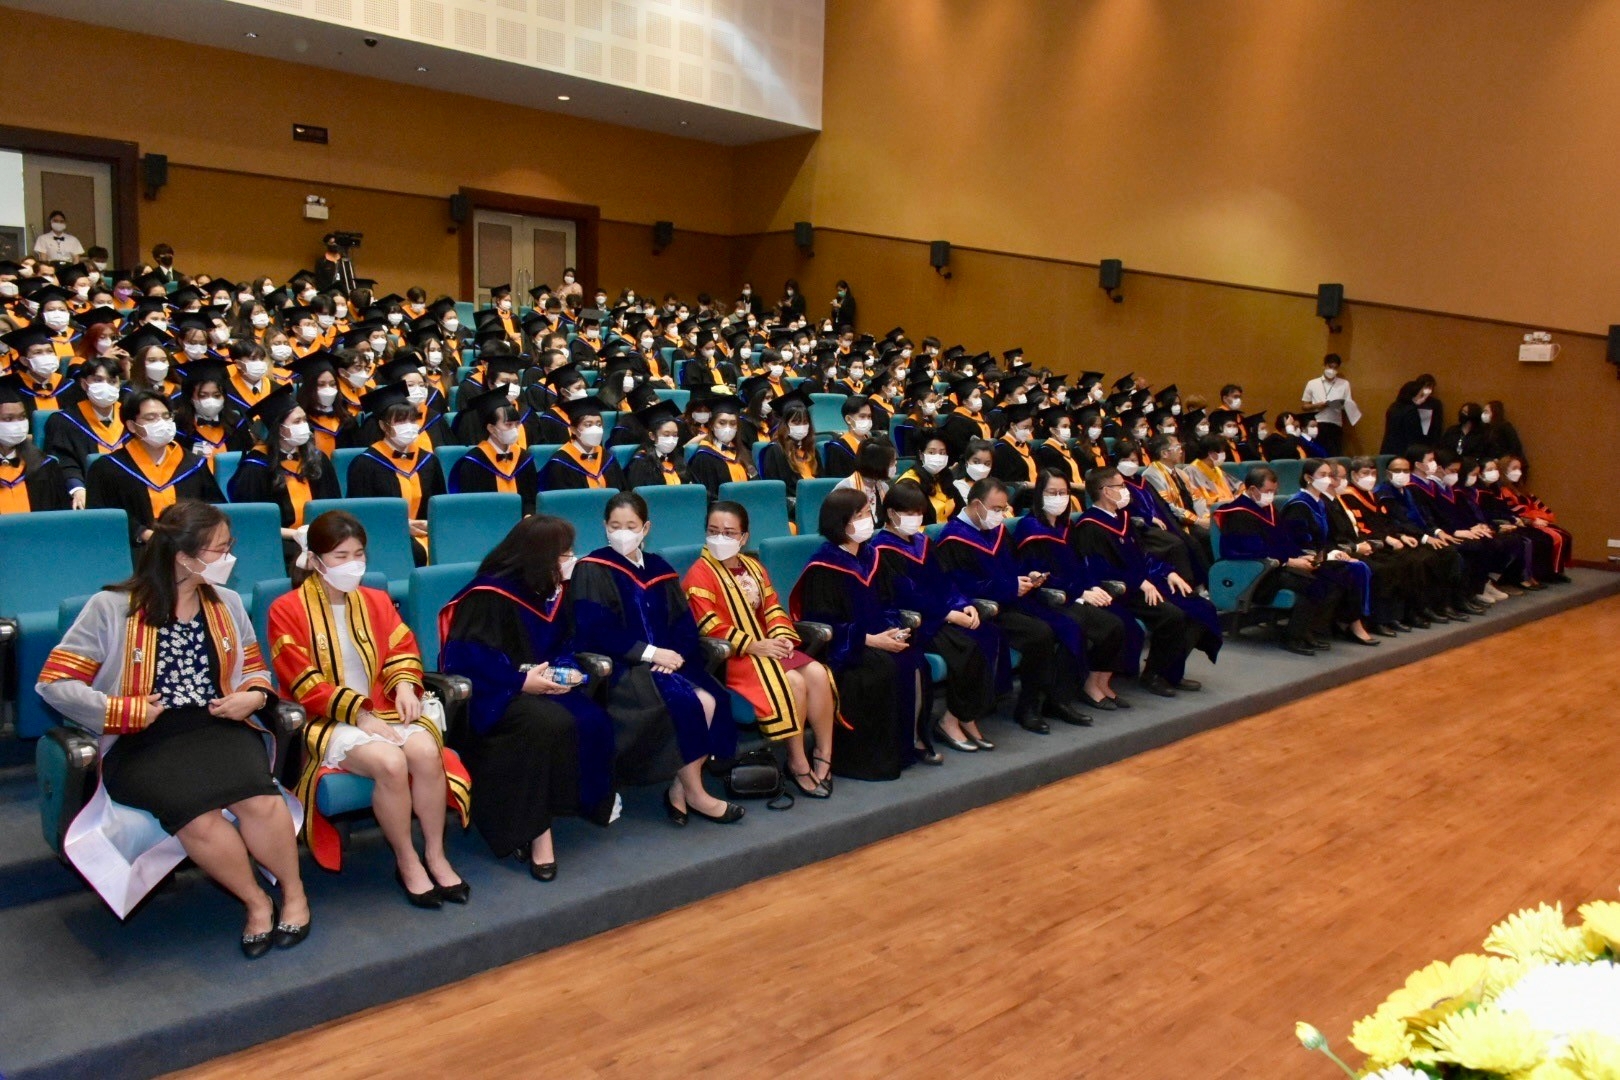 พิธีปัจฉิมนิเทศนักศึกษาผู้สำเร็จการศึกษาระดับปริญญาตรี และระดับบัณฑิตศึกษา ปีการศึกษา 2563 - 2564